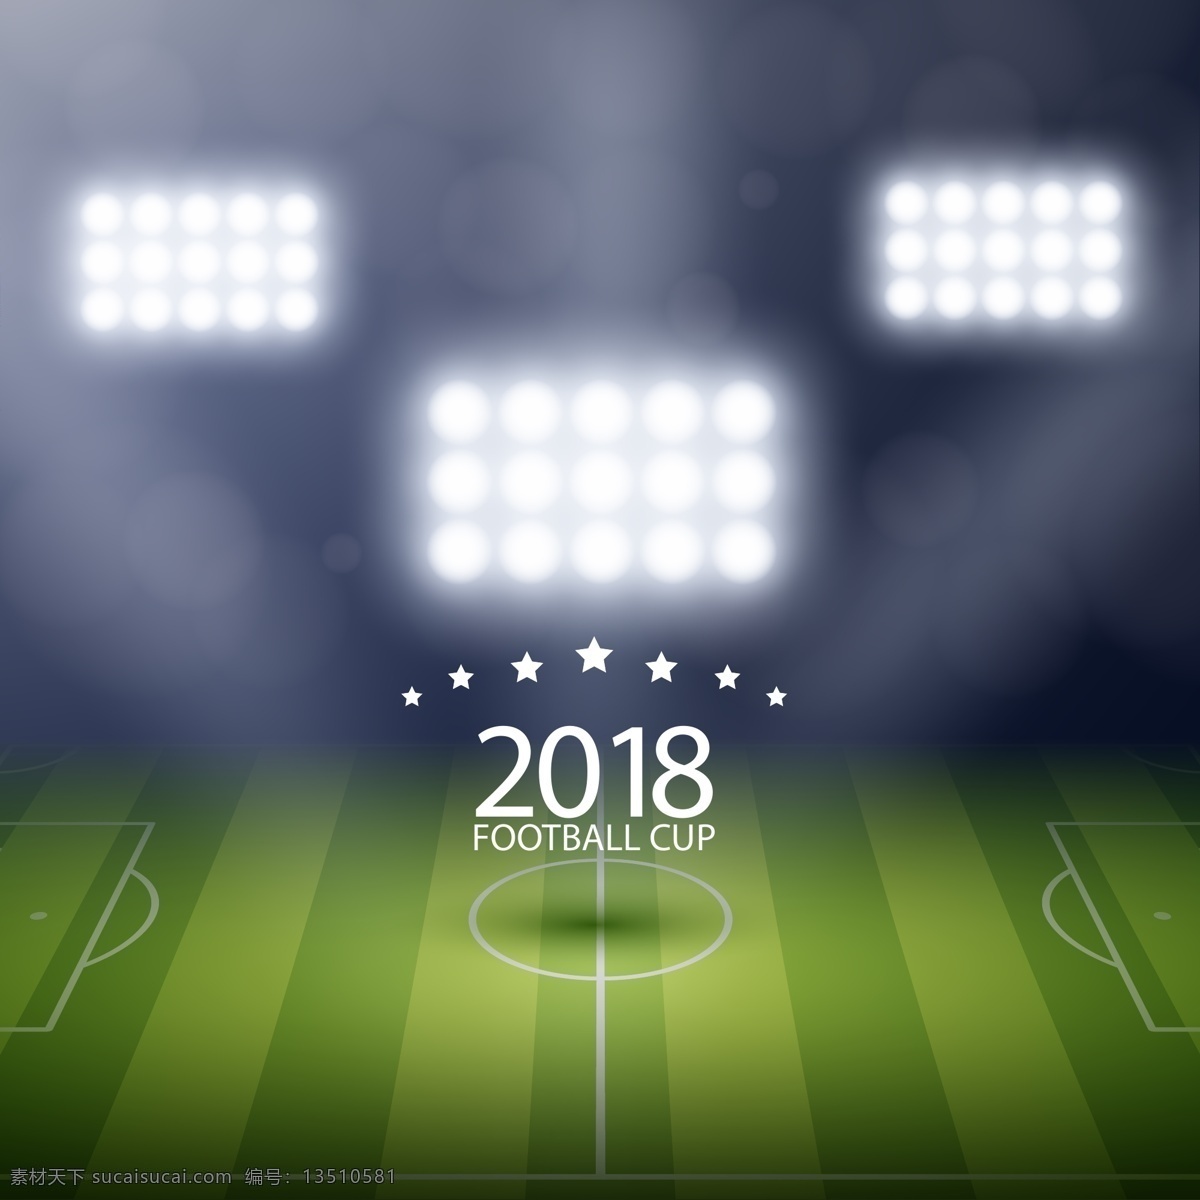 2018 世界杯 足球赛 球场 灯光 背景 矢量素材 足球 卡通 俄罗斯 欧洲杯 比赛 体育 竞赛